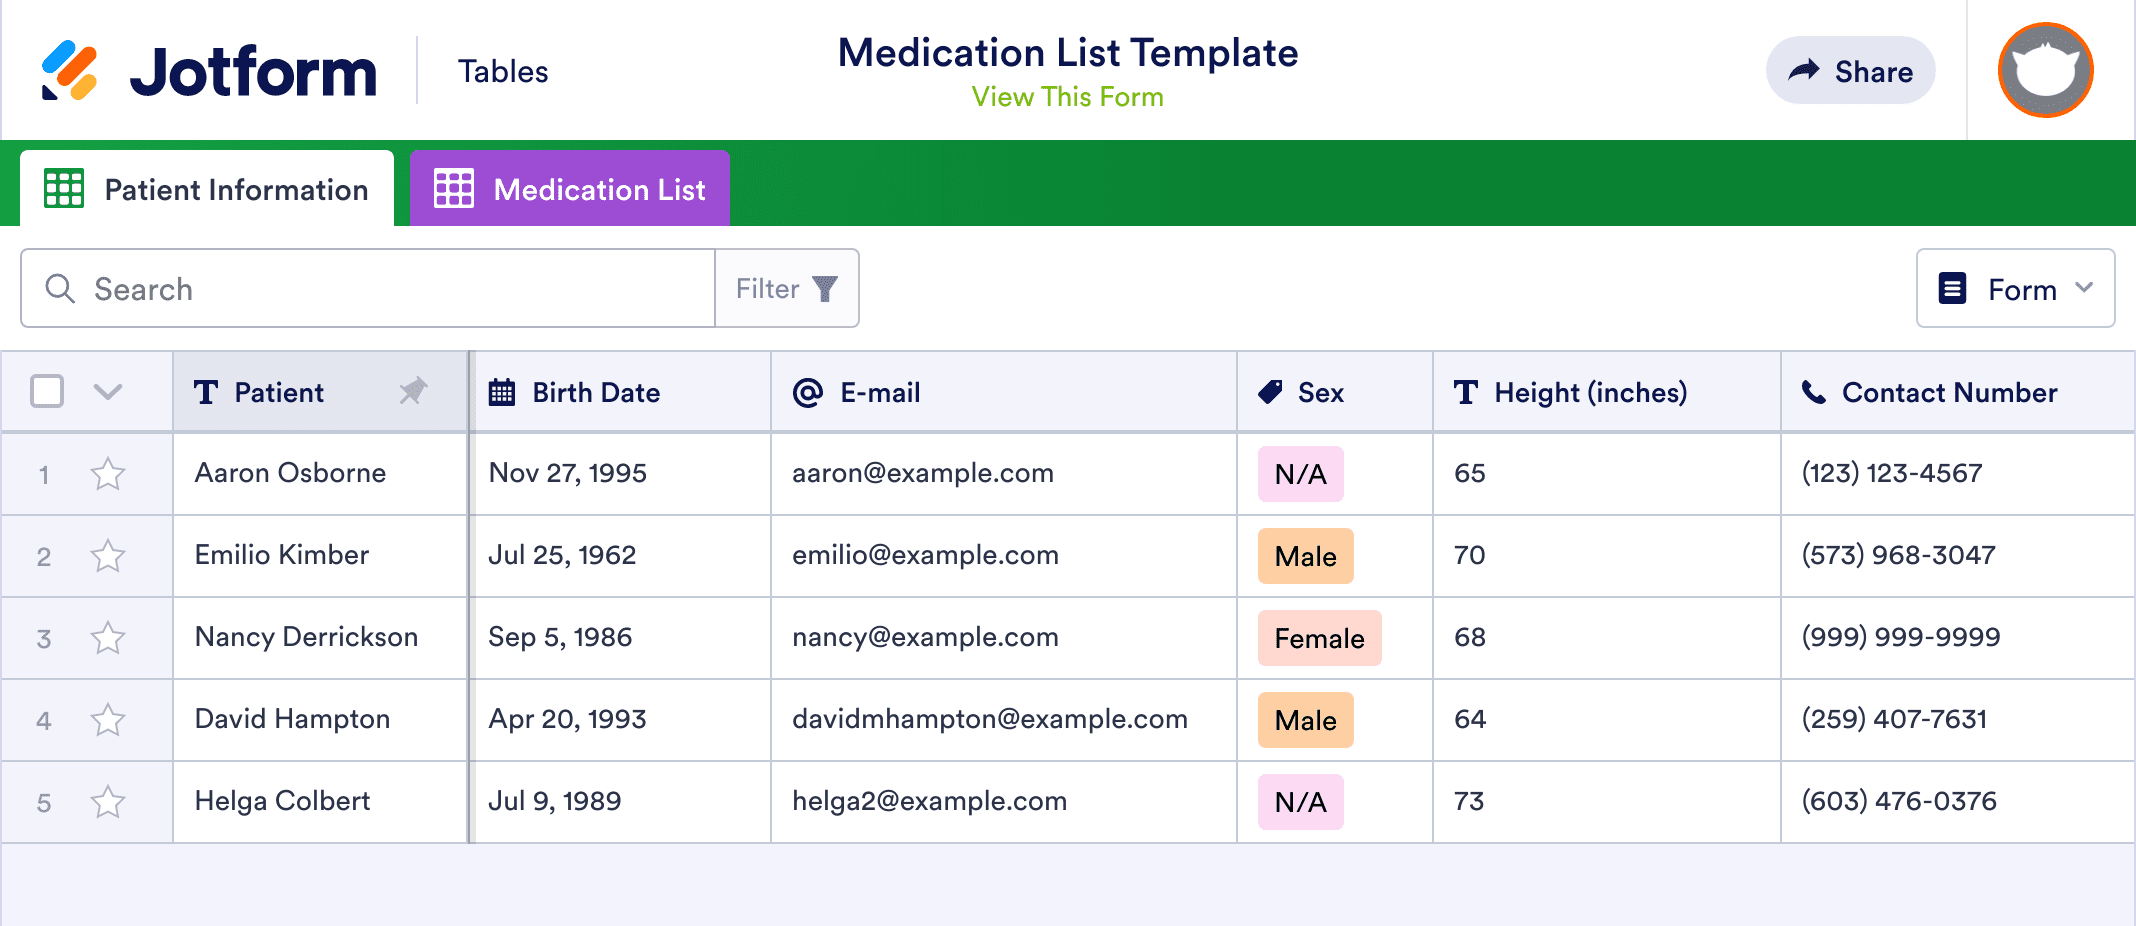 Medication List Template